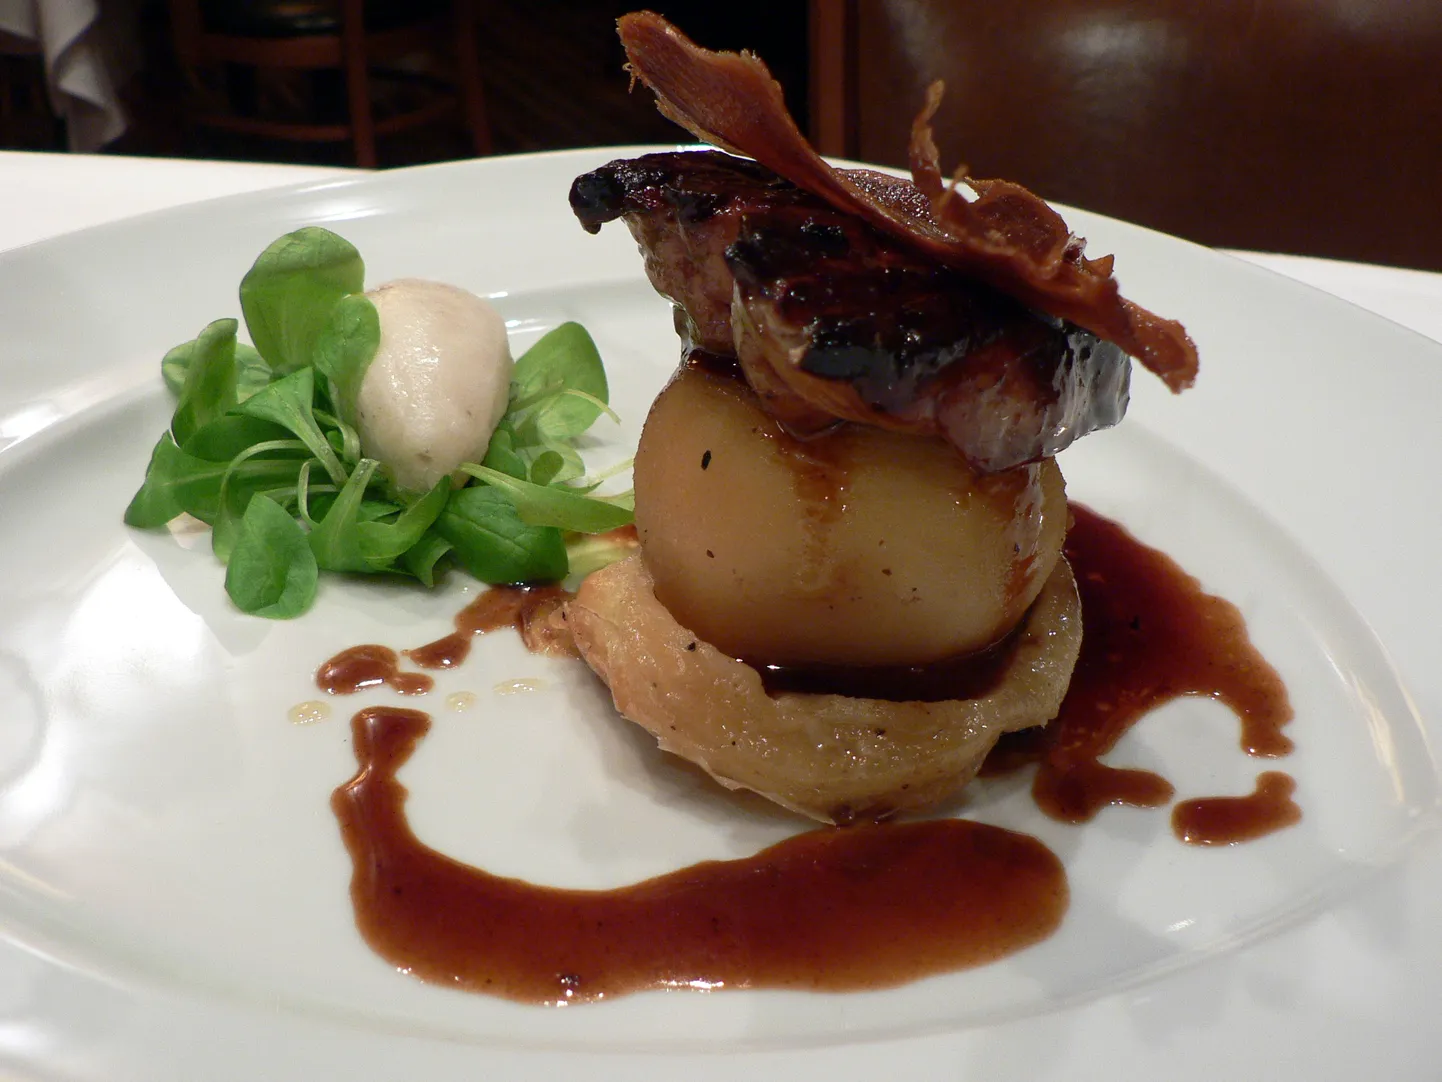 Foie gras’st valmistatud roog. Midagi sarnast serveeriti ka Airbusi töötajatele õhtusöögil, mis lõppes sadadele inimestele oksendamise ja kõhulahtisusega.